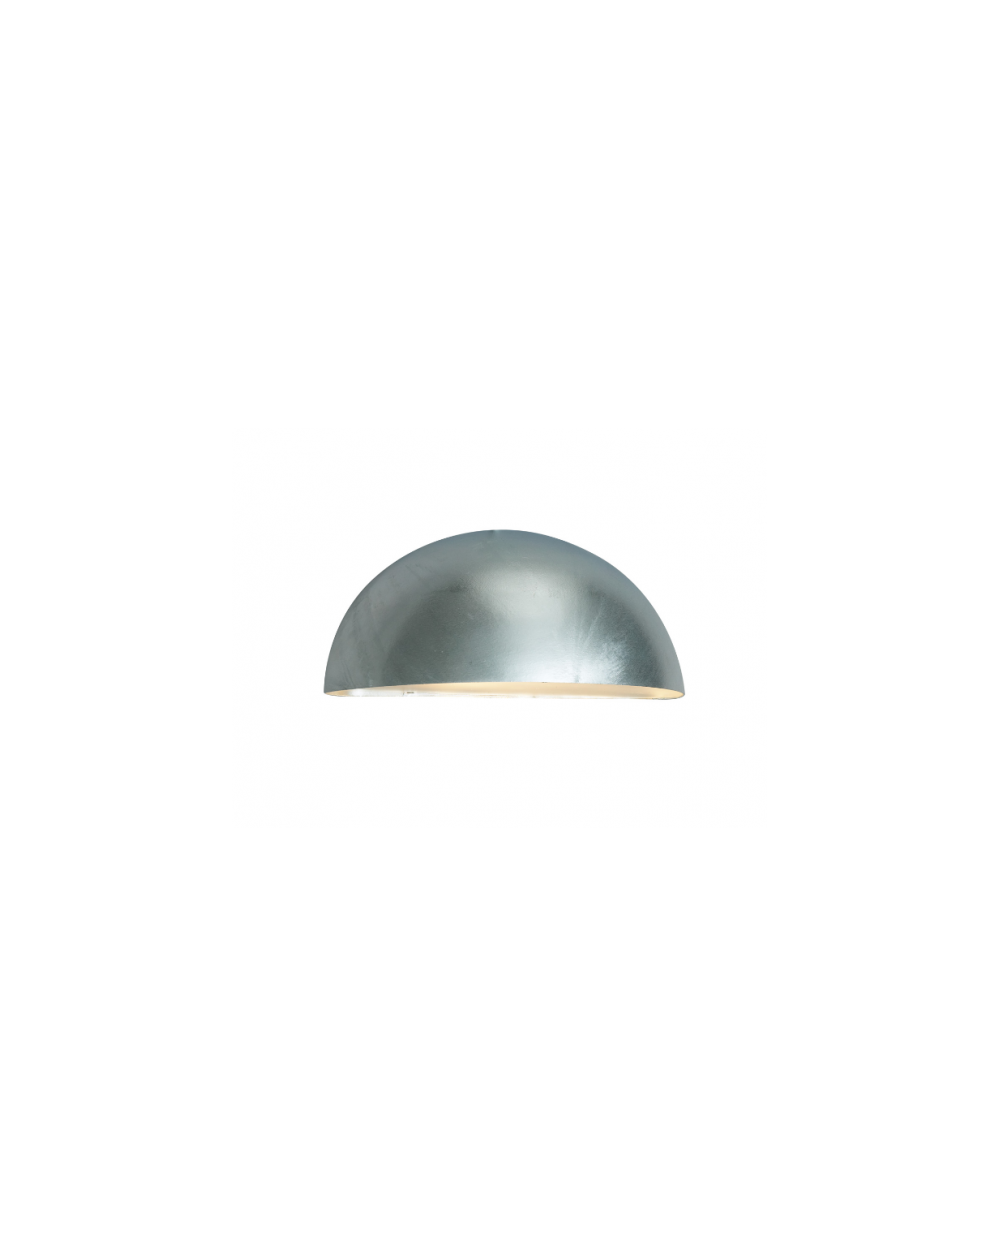 Lampa ścienna / kinkiet Paris LED - Norlys oprawa ledowa zewnętrzna ocynk biała lub czarna